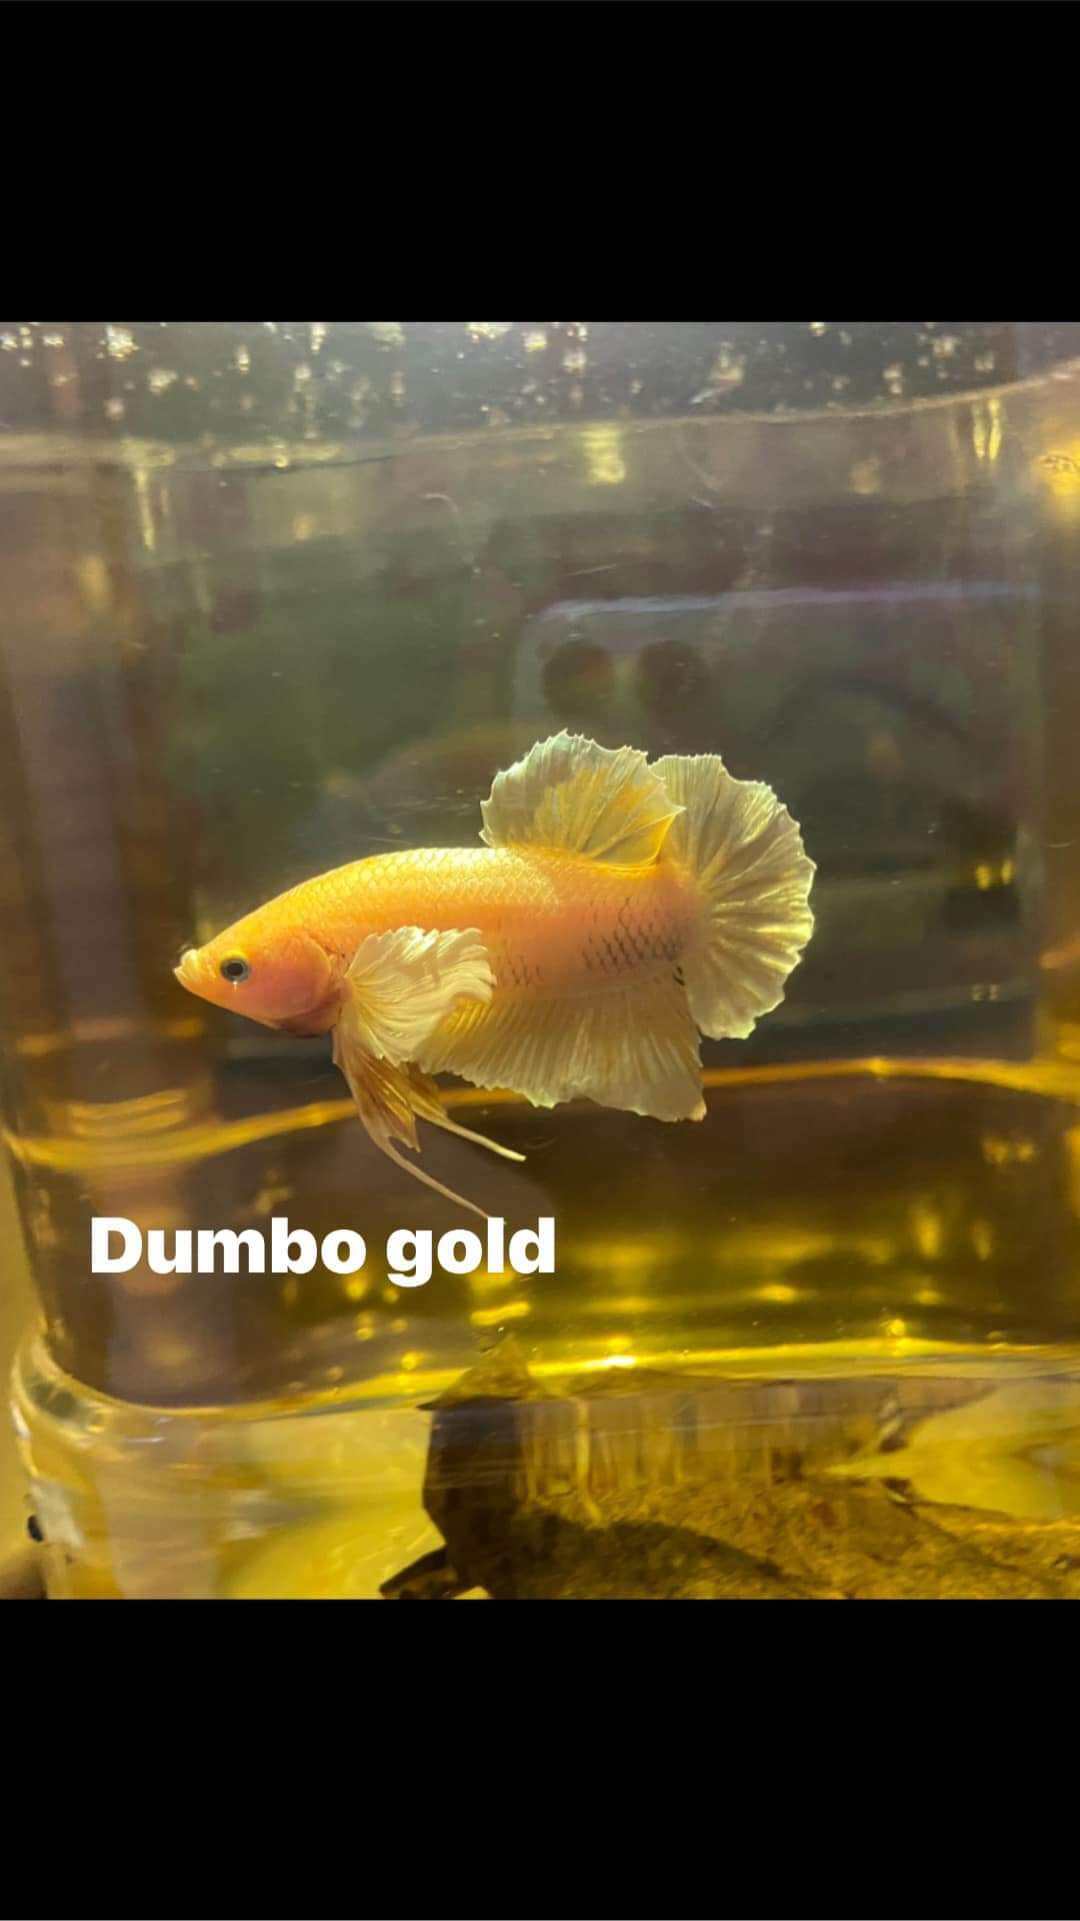 Dumbo gold